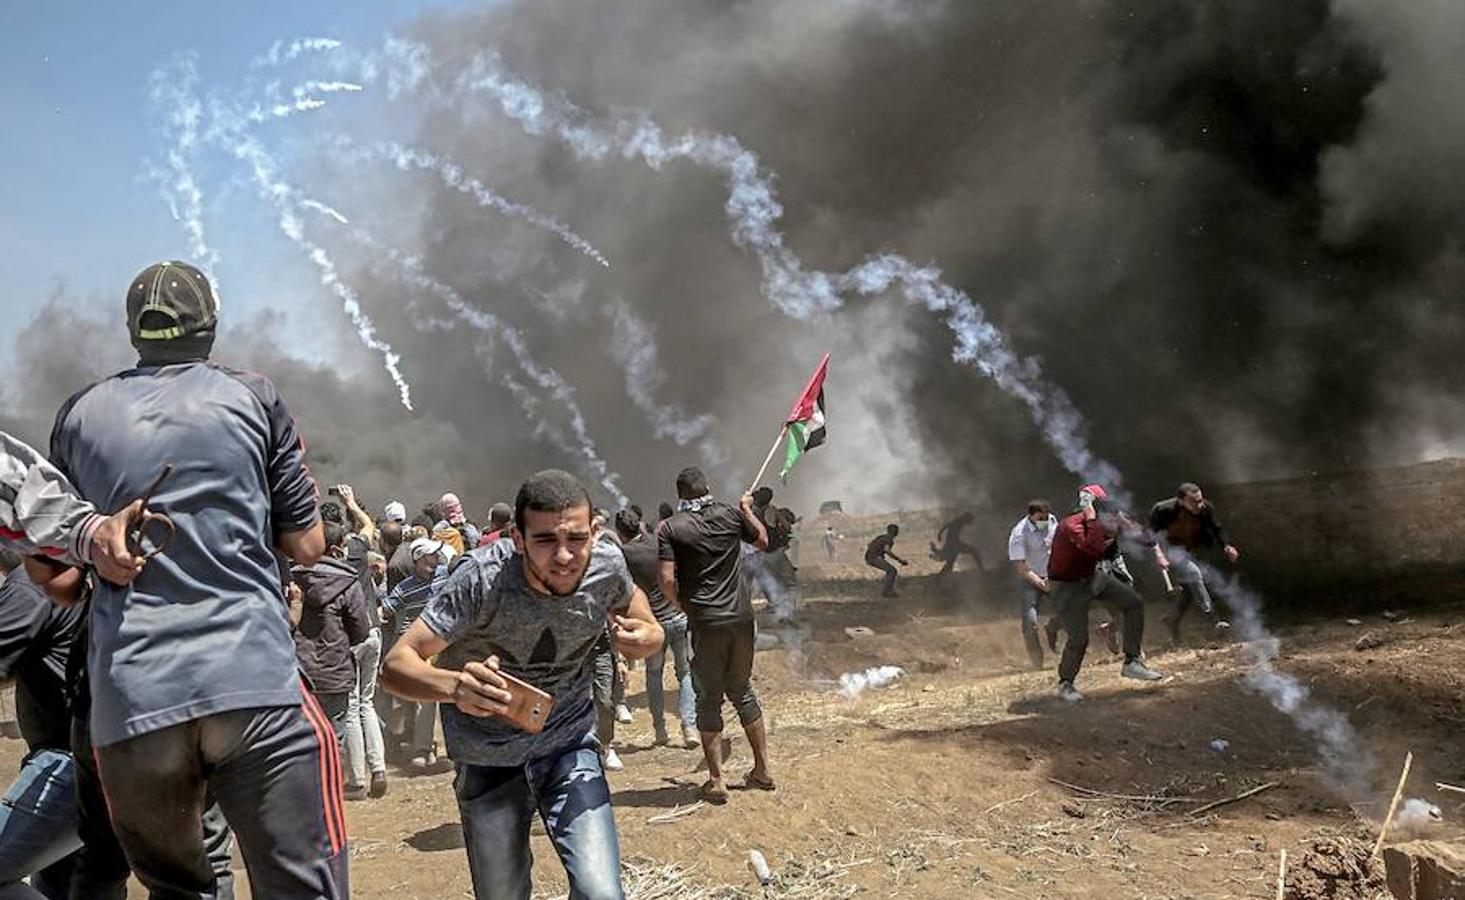 La reacción armada del Gobierno israelí a las protestas de palestinos en Gaza, por el traslado de la embajada de EE UU a Jerusalén, desata un auténtico baño de sangre